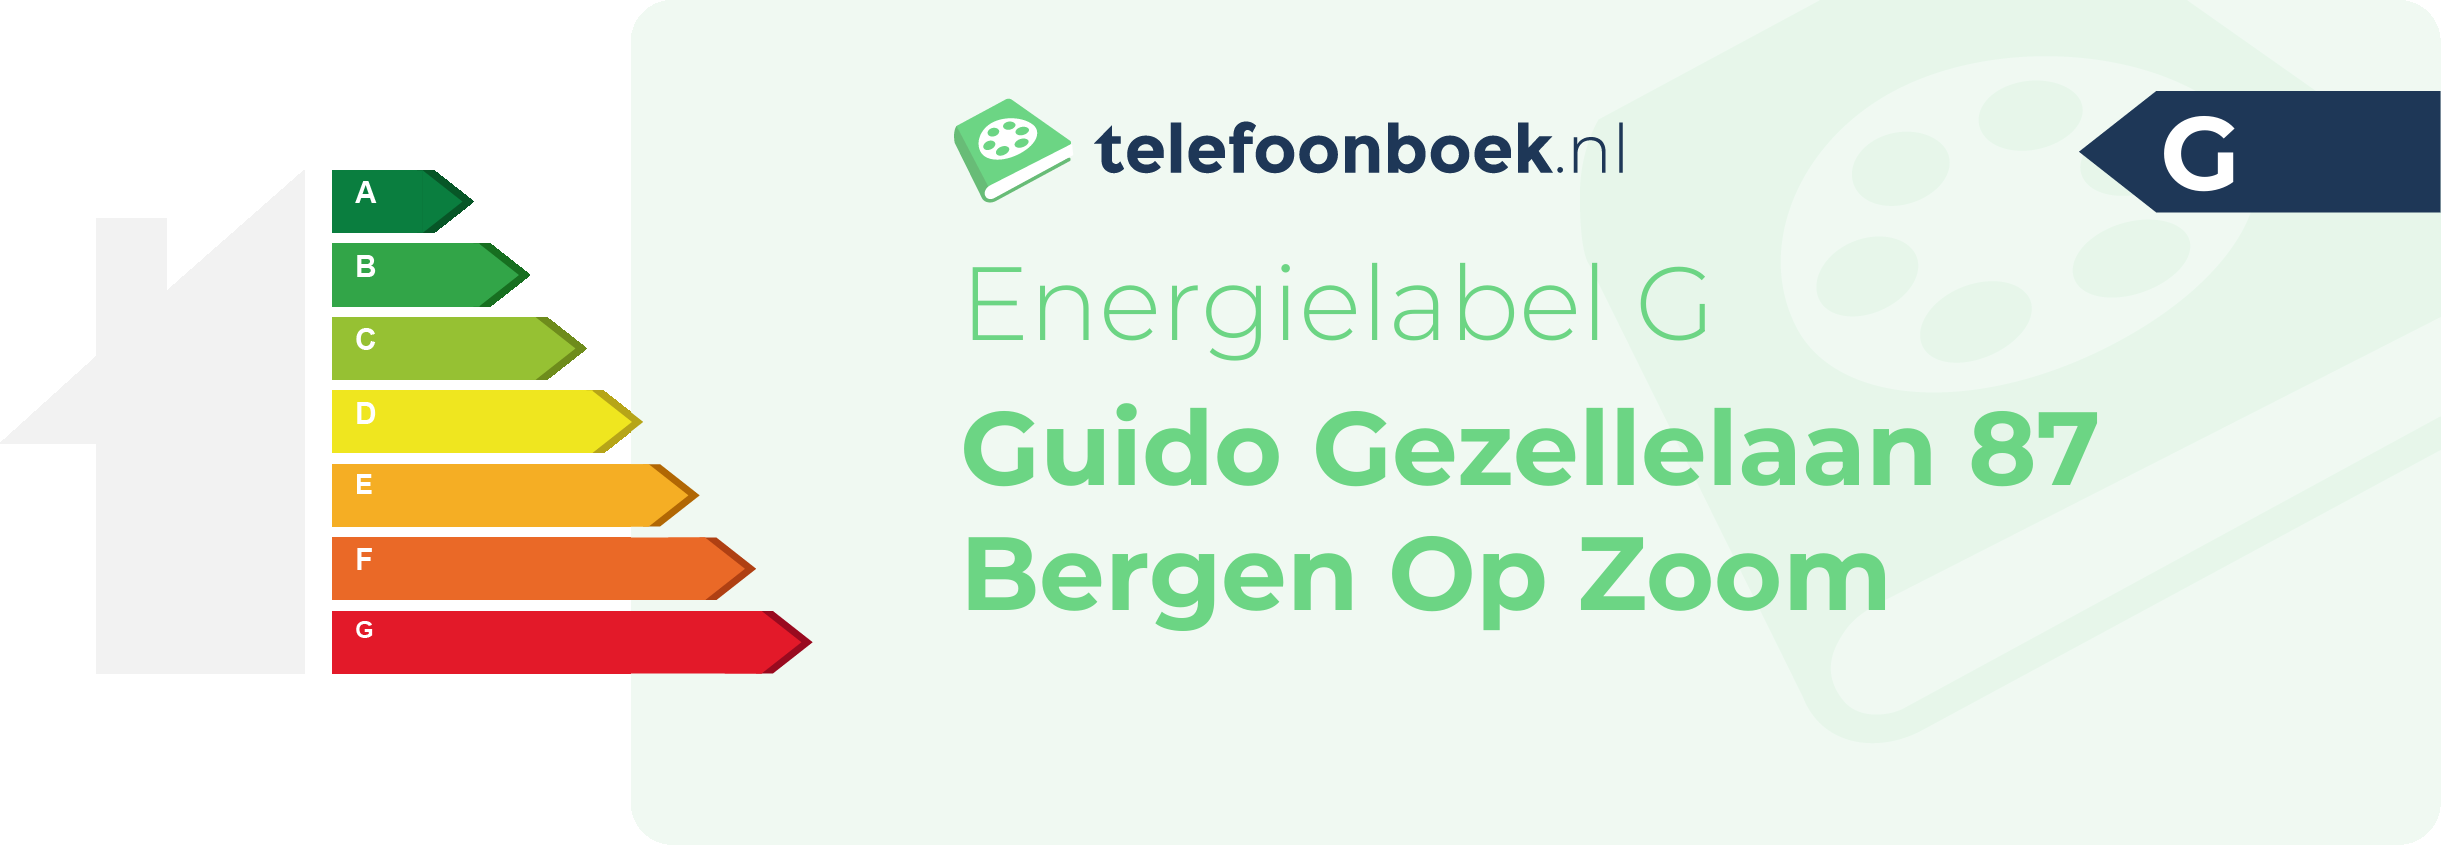 Energielabel Guido Gezellelaan 87 Bergen Op Zoom